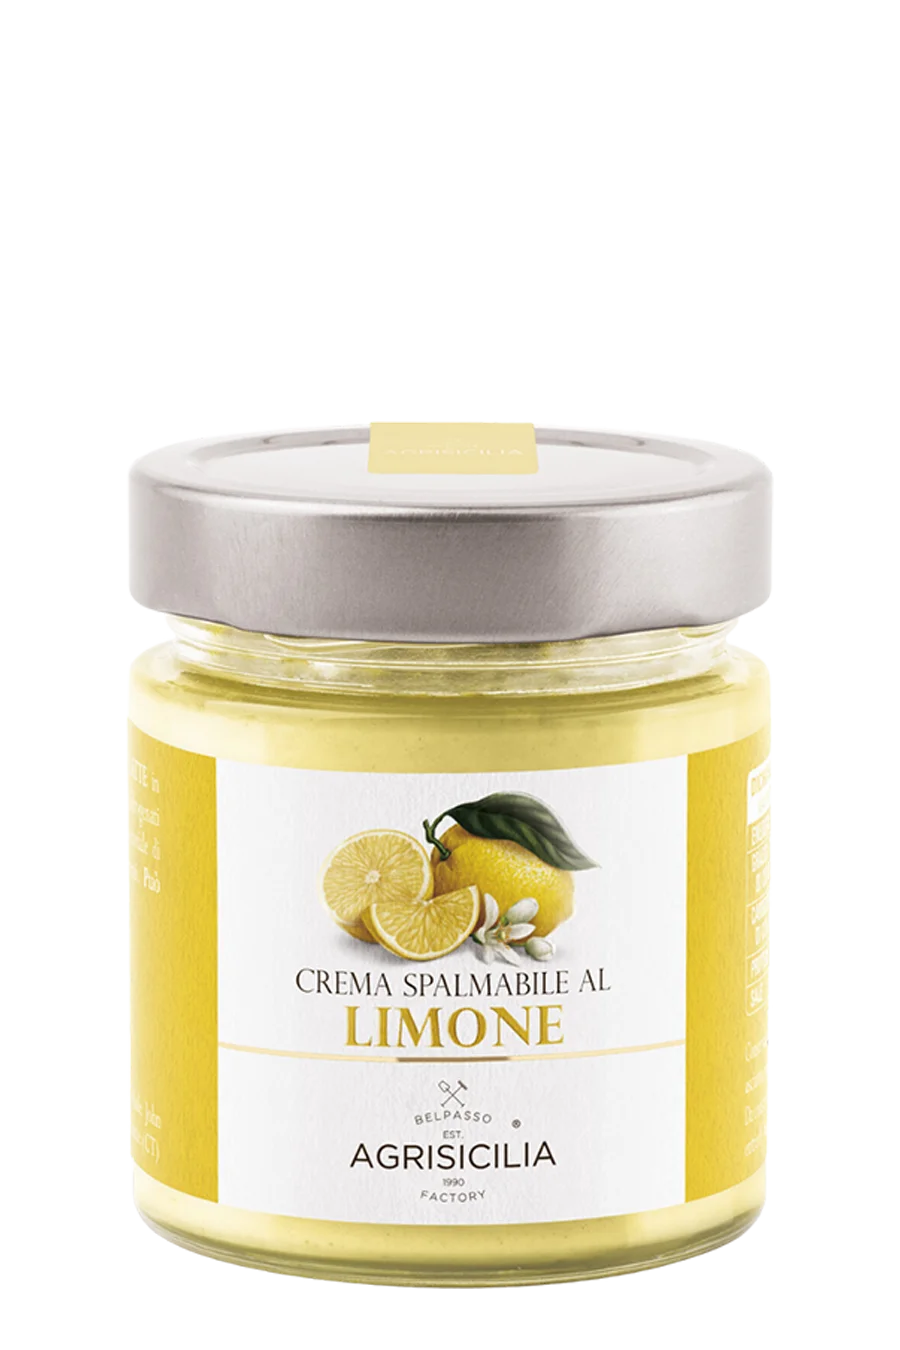 vasetto di Crema spalmabile al Limone AGRISICILIA